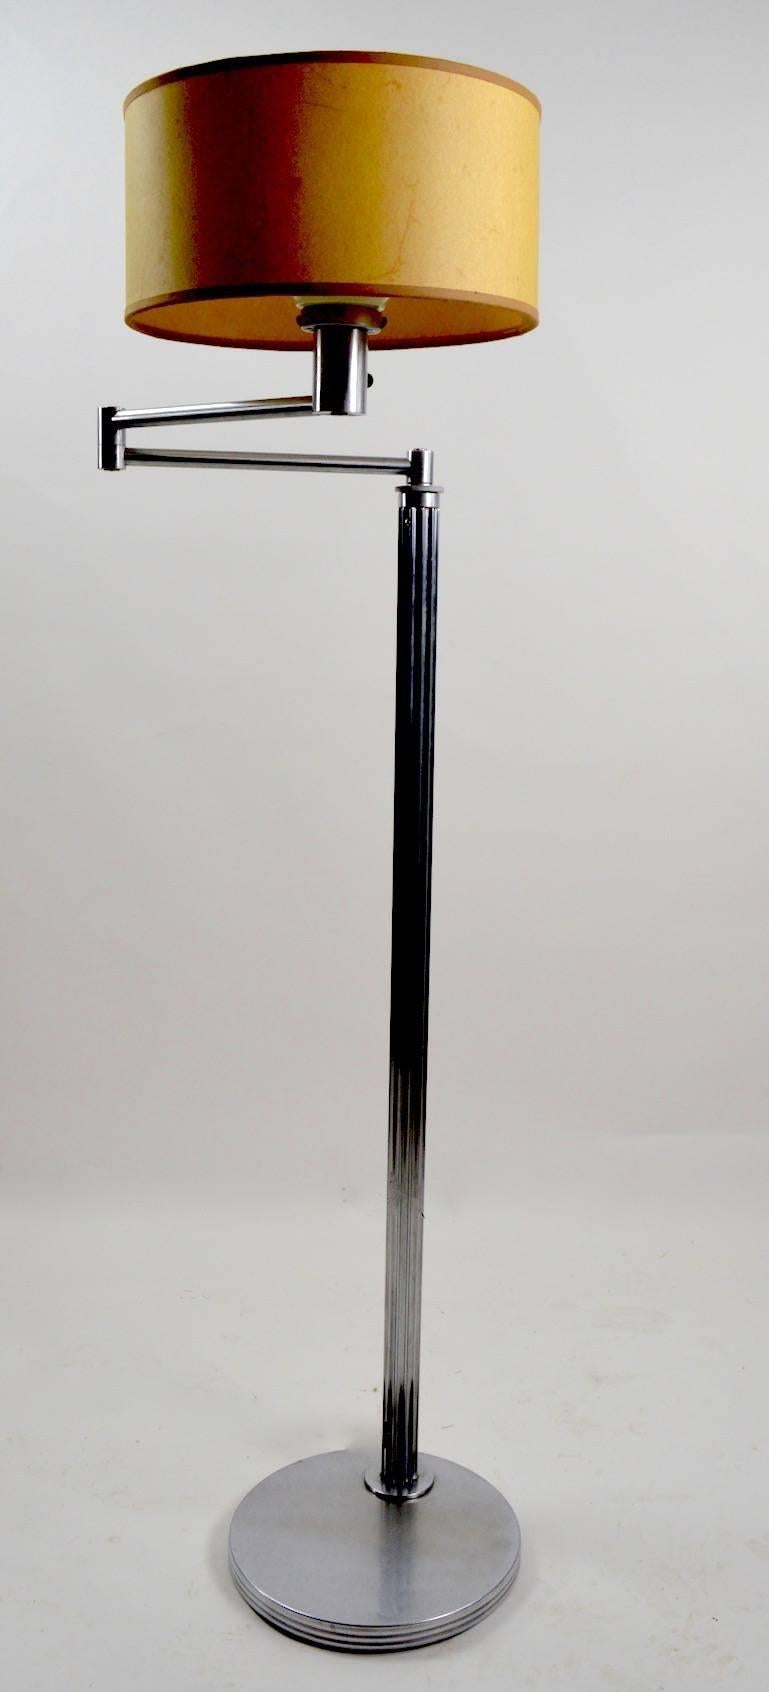 Version précoce et rare de la désormais iconique  Lampadaire à bras pivotant Nessen de l'âge des machines. La construction de cet exemplaire permet de dater la lampe des années 1930 (colonne cannelée, etc.). La lampe est signée Nessen Studios sur la